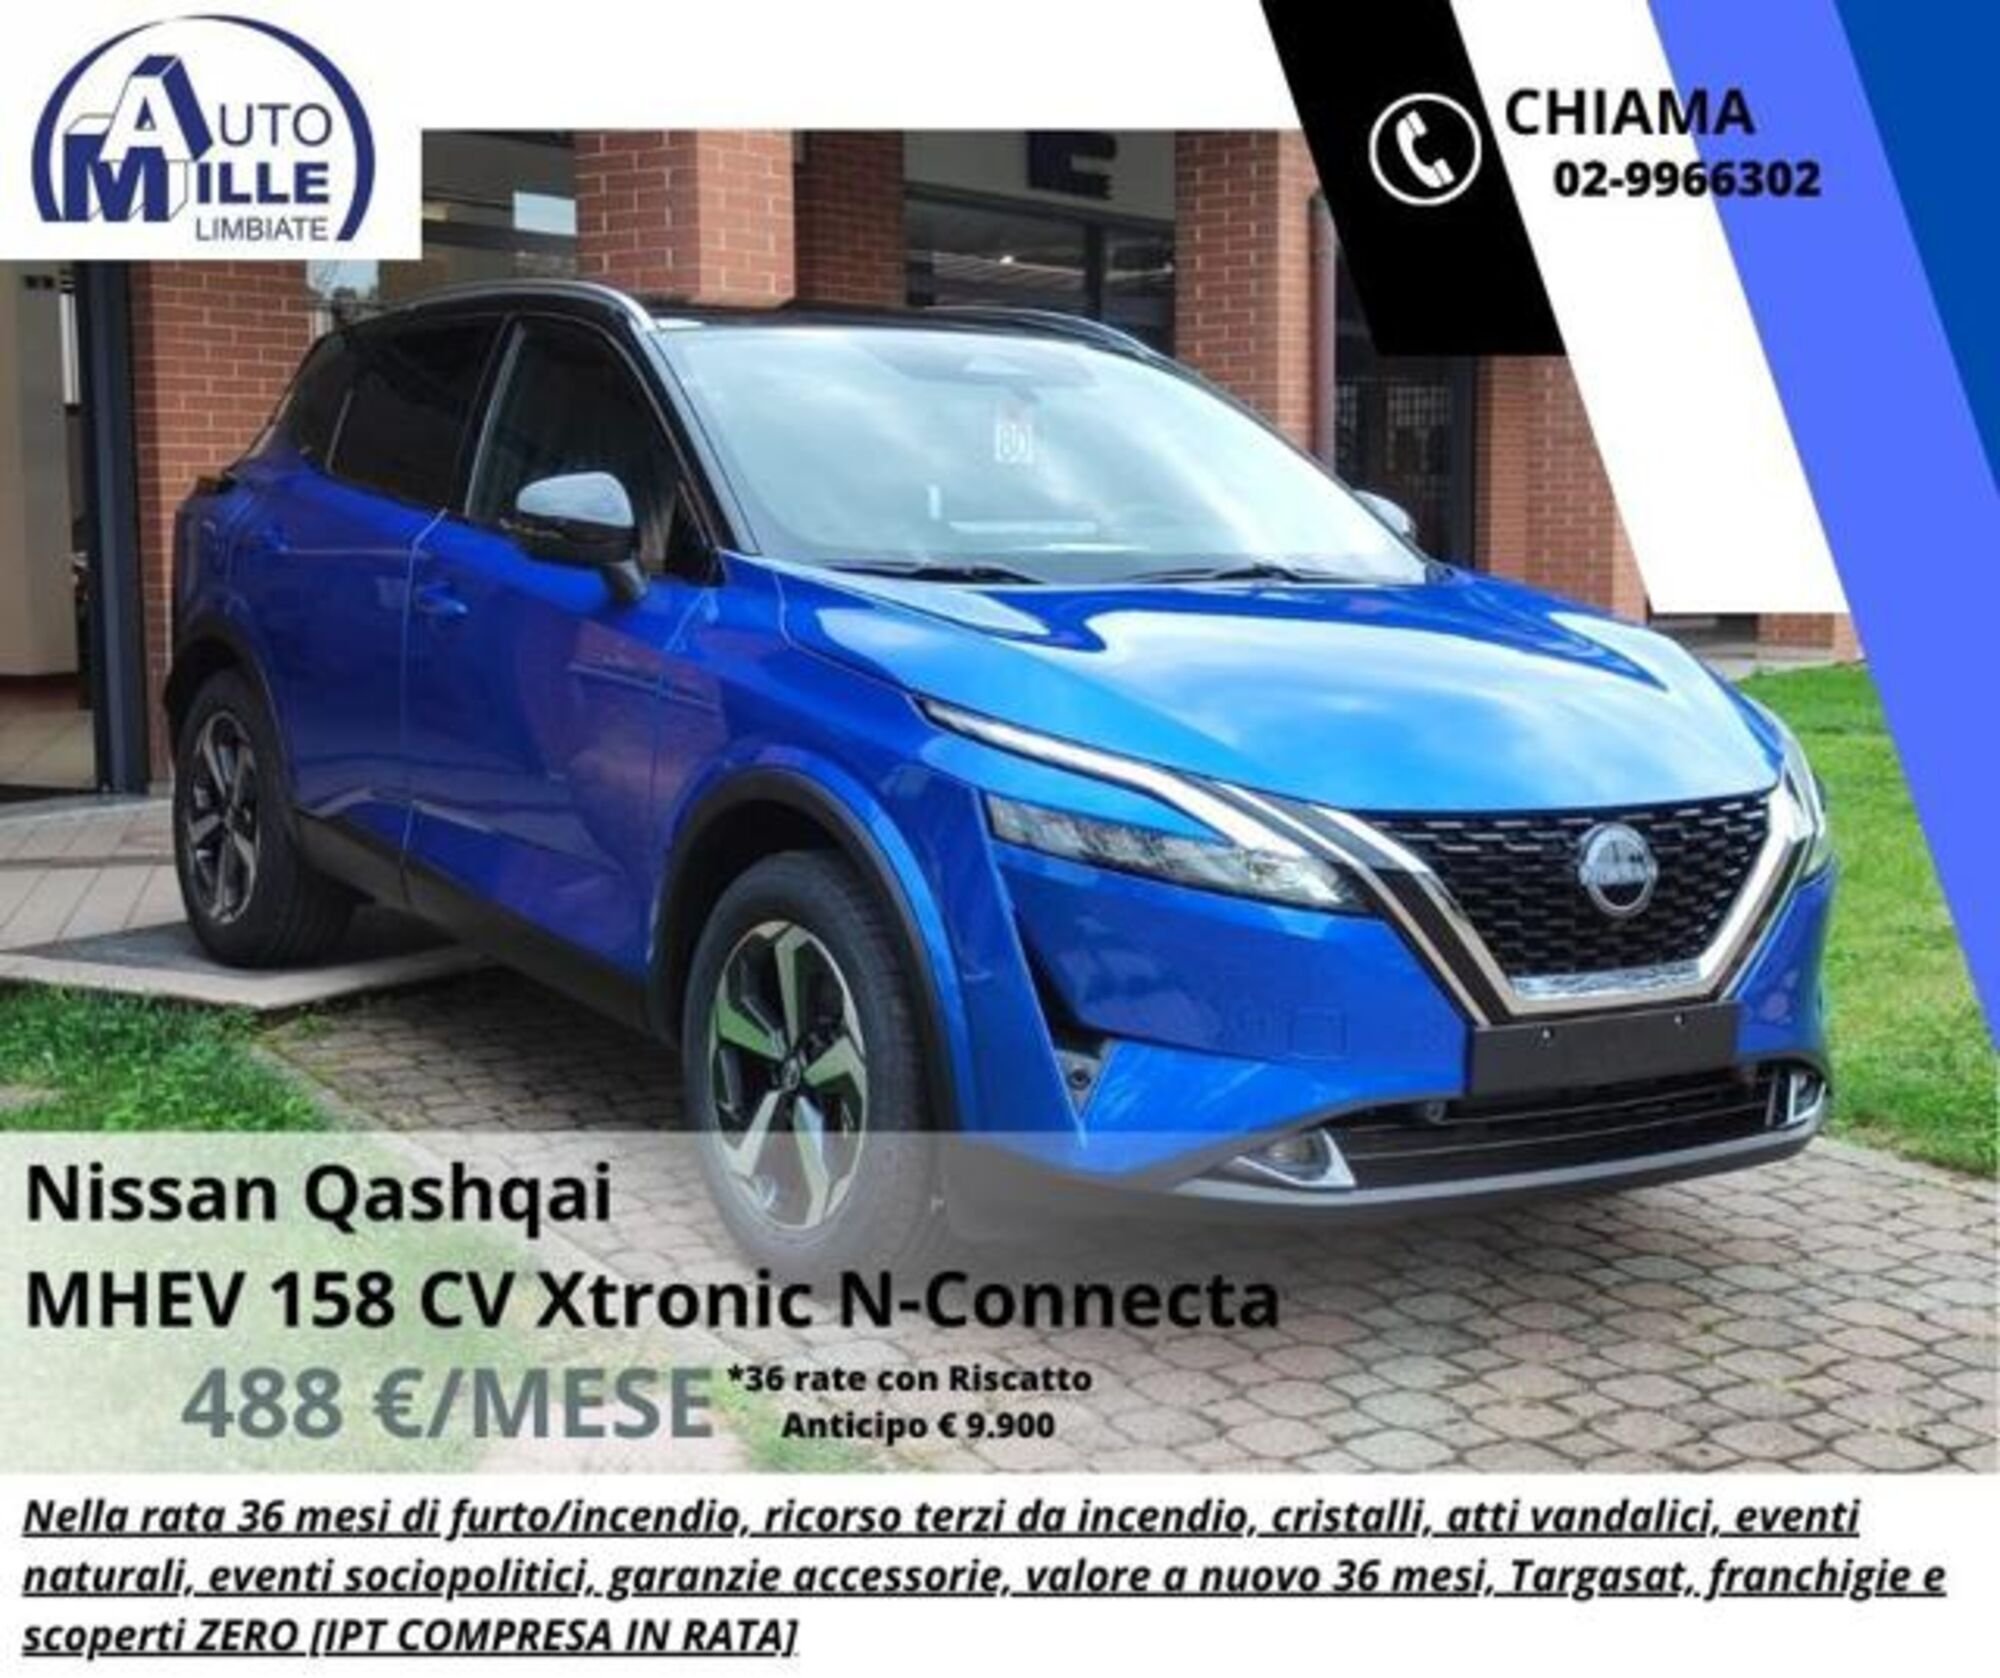 Nissan Qashqai MHEV 158 CV Xtronic N-Connecta